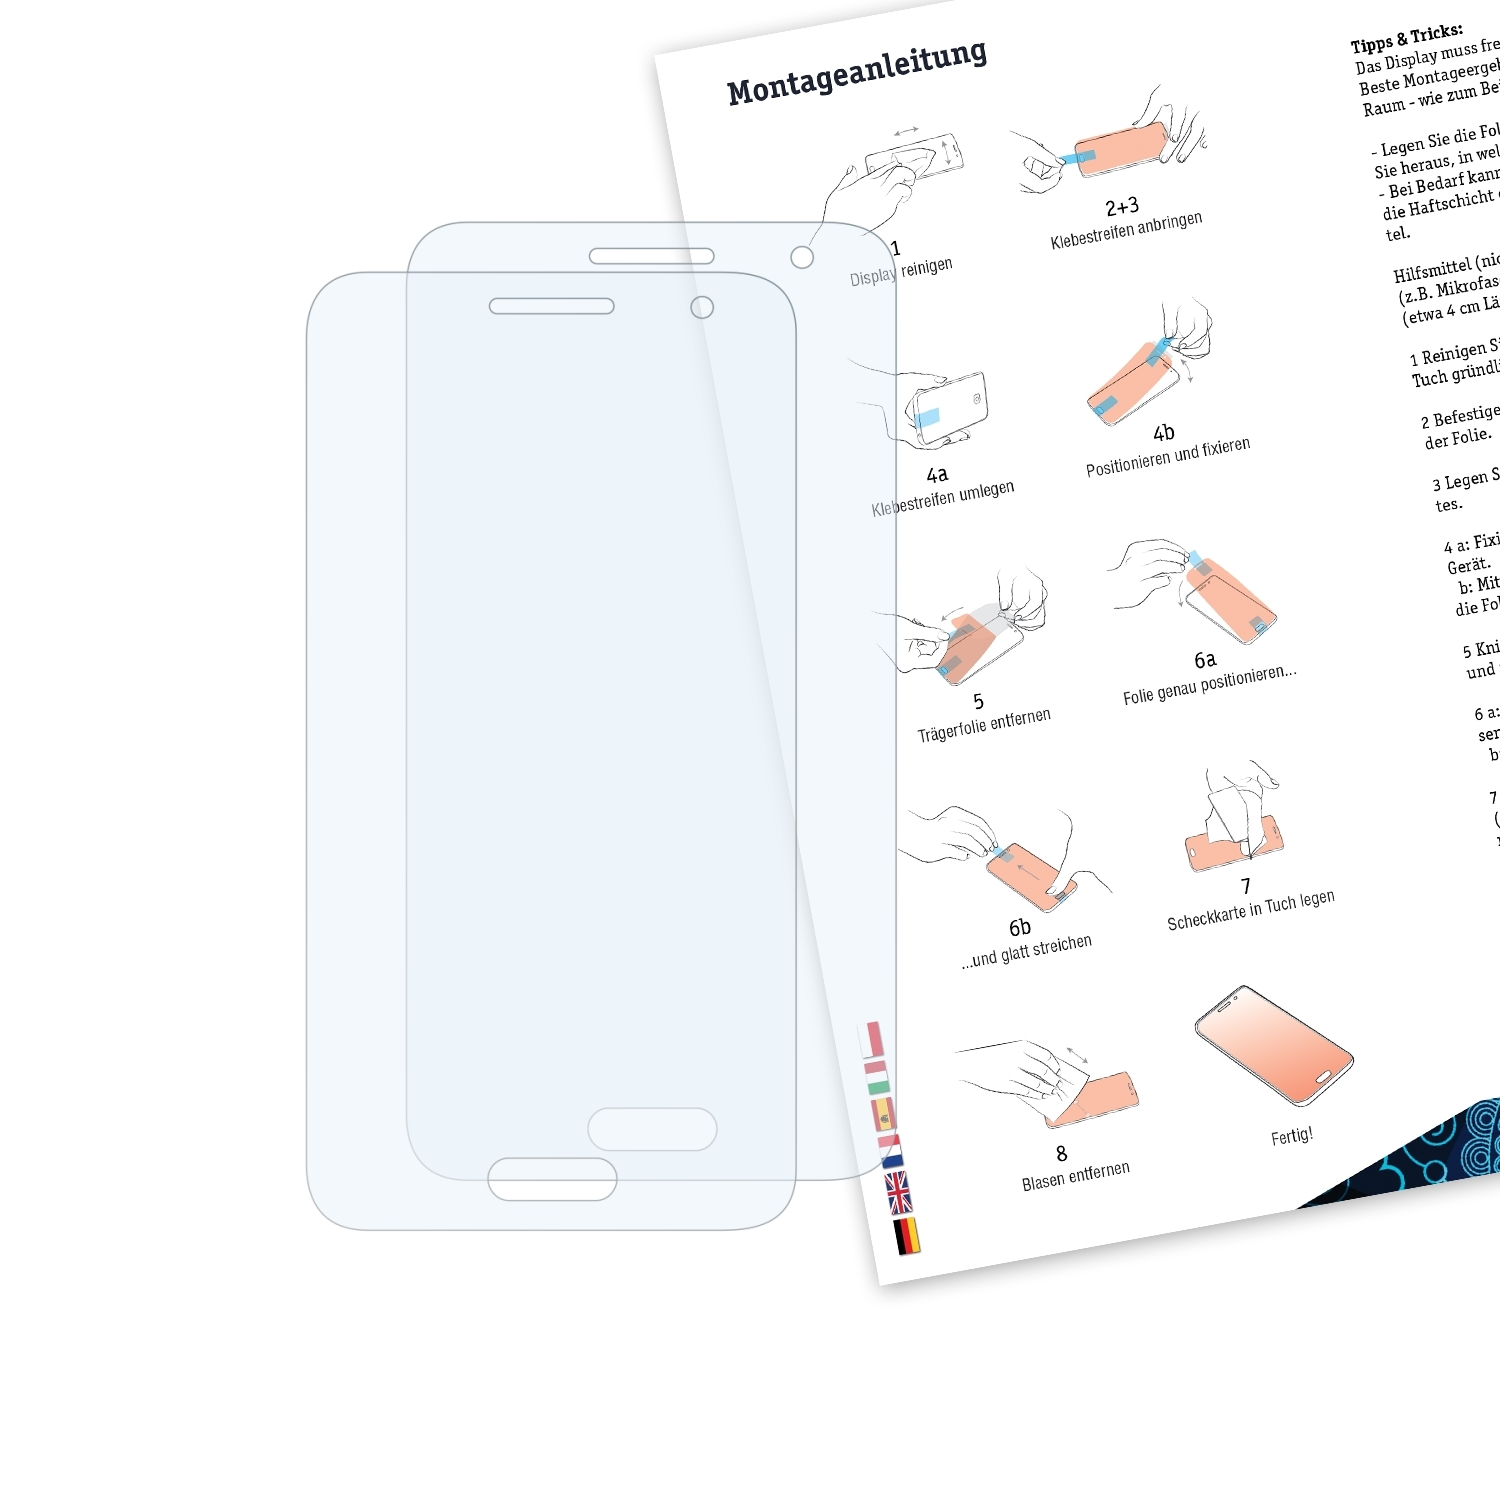 BRUNI 2x Basics-Clear Galaxy 2) Samsung Core Schutzfolie(für